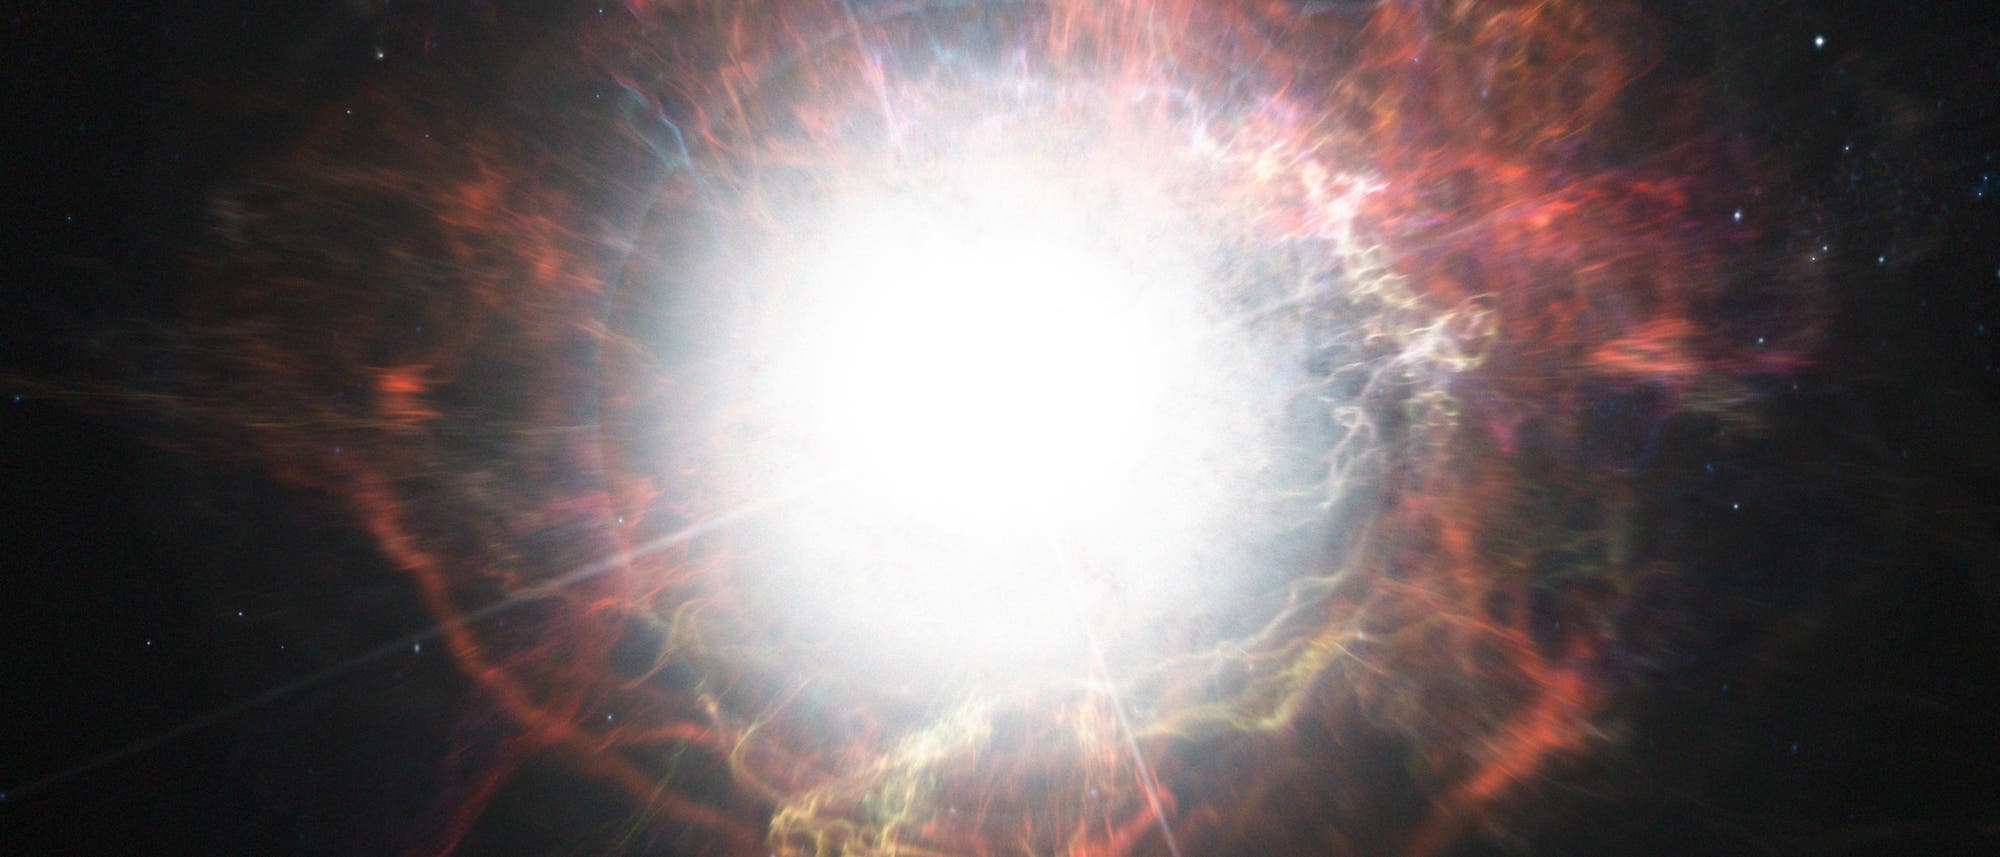 Staubbildung in einer Supernova